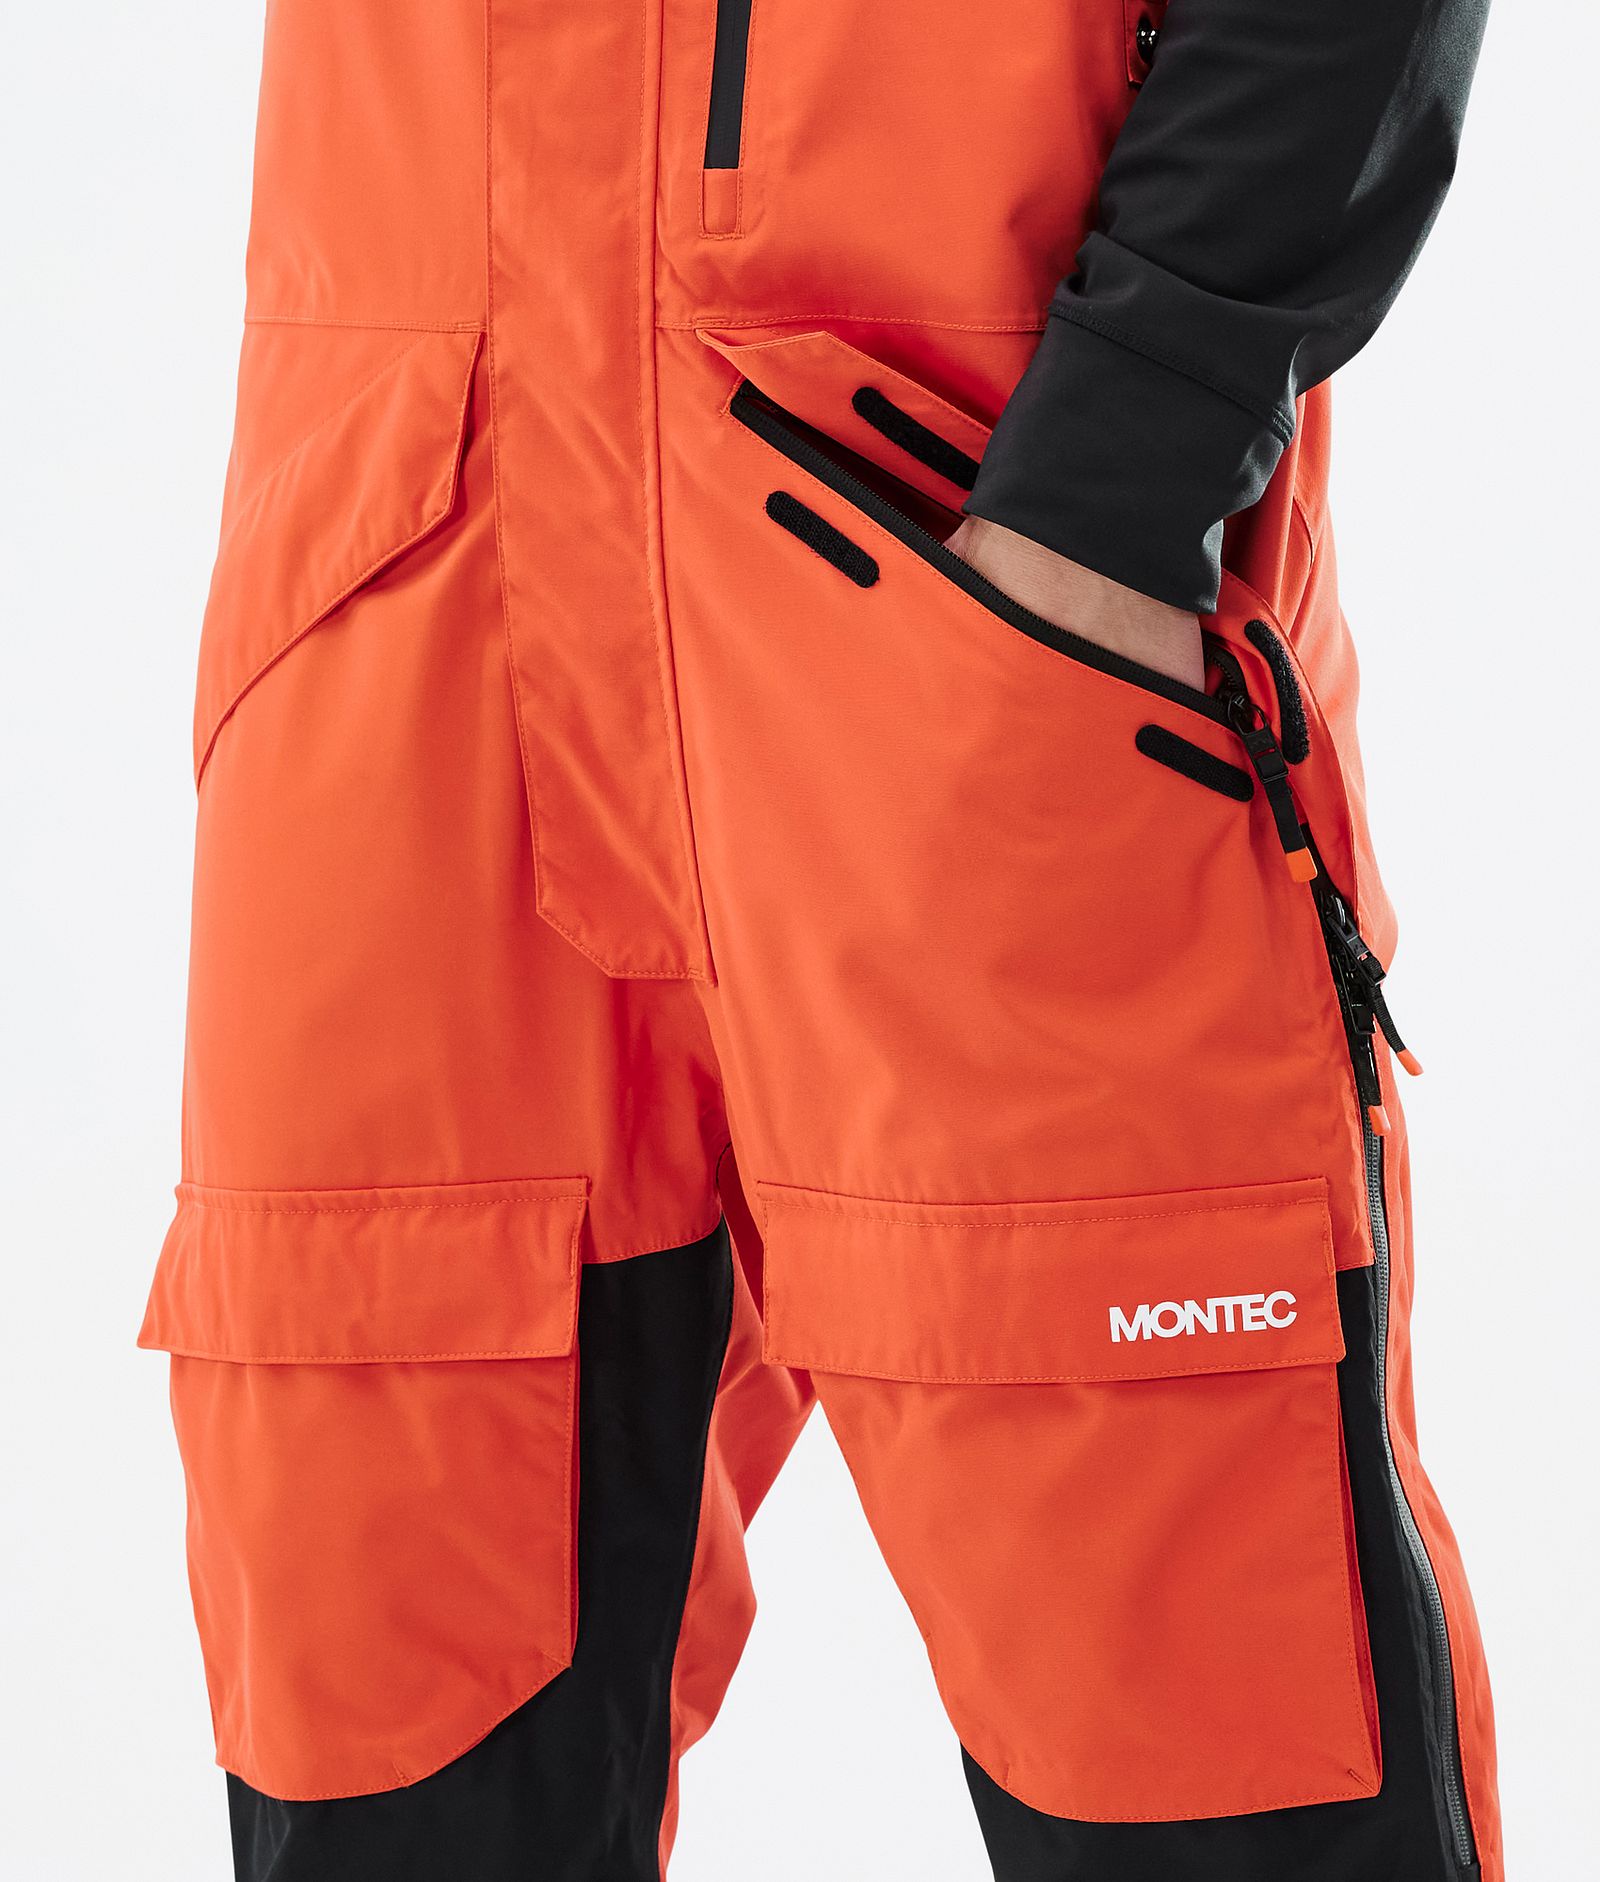 Montec Fawk Ski Pants Men Orange/Black/Metal Blue, Image 4 of 6